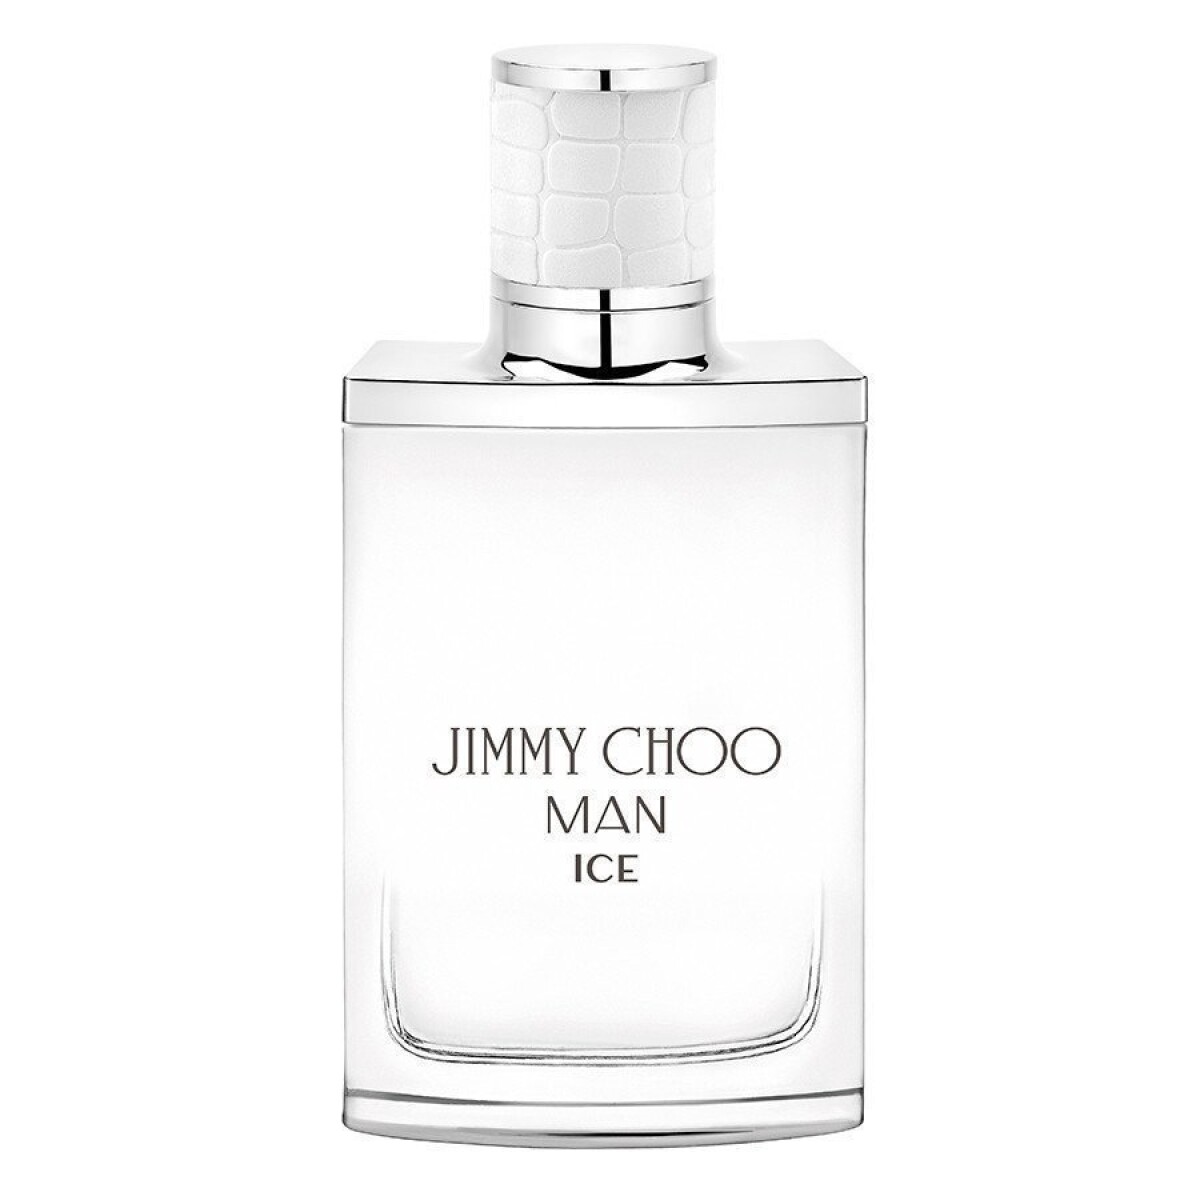 Perfume J.Choo Man Ice Edt 